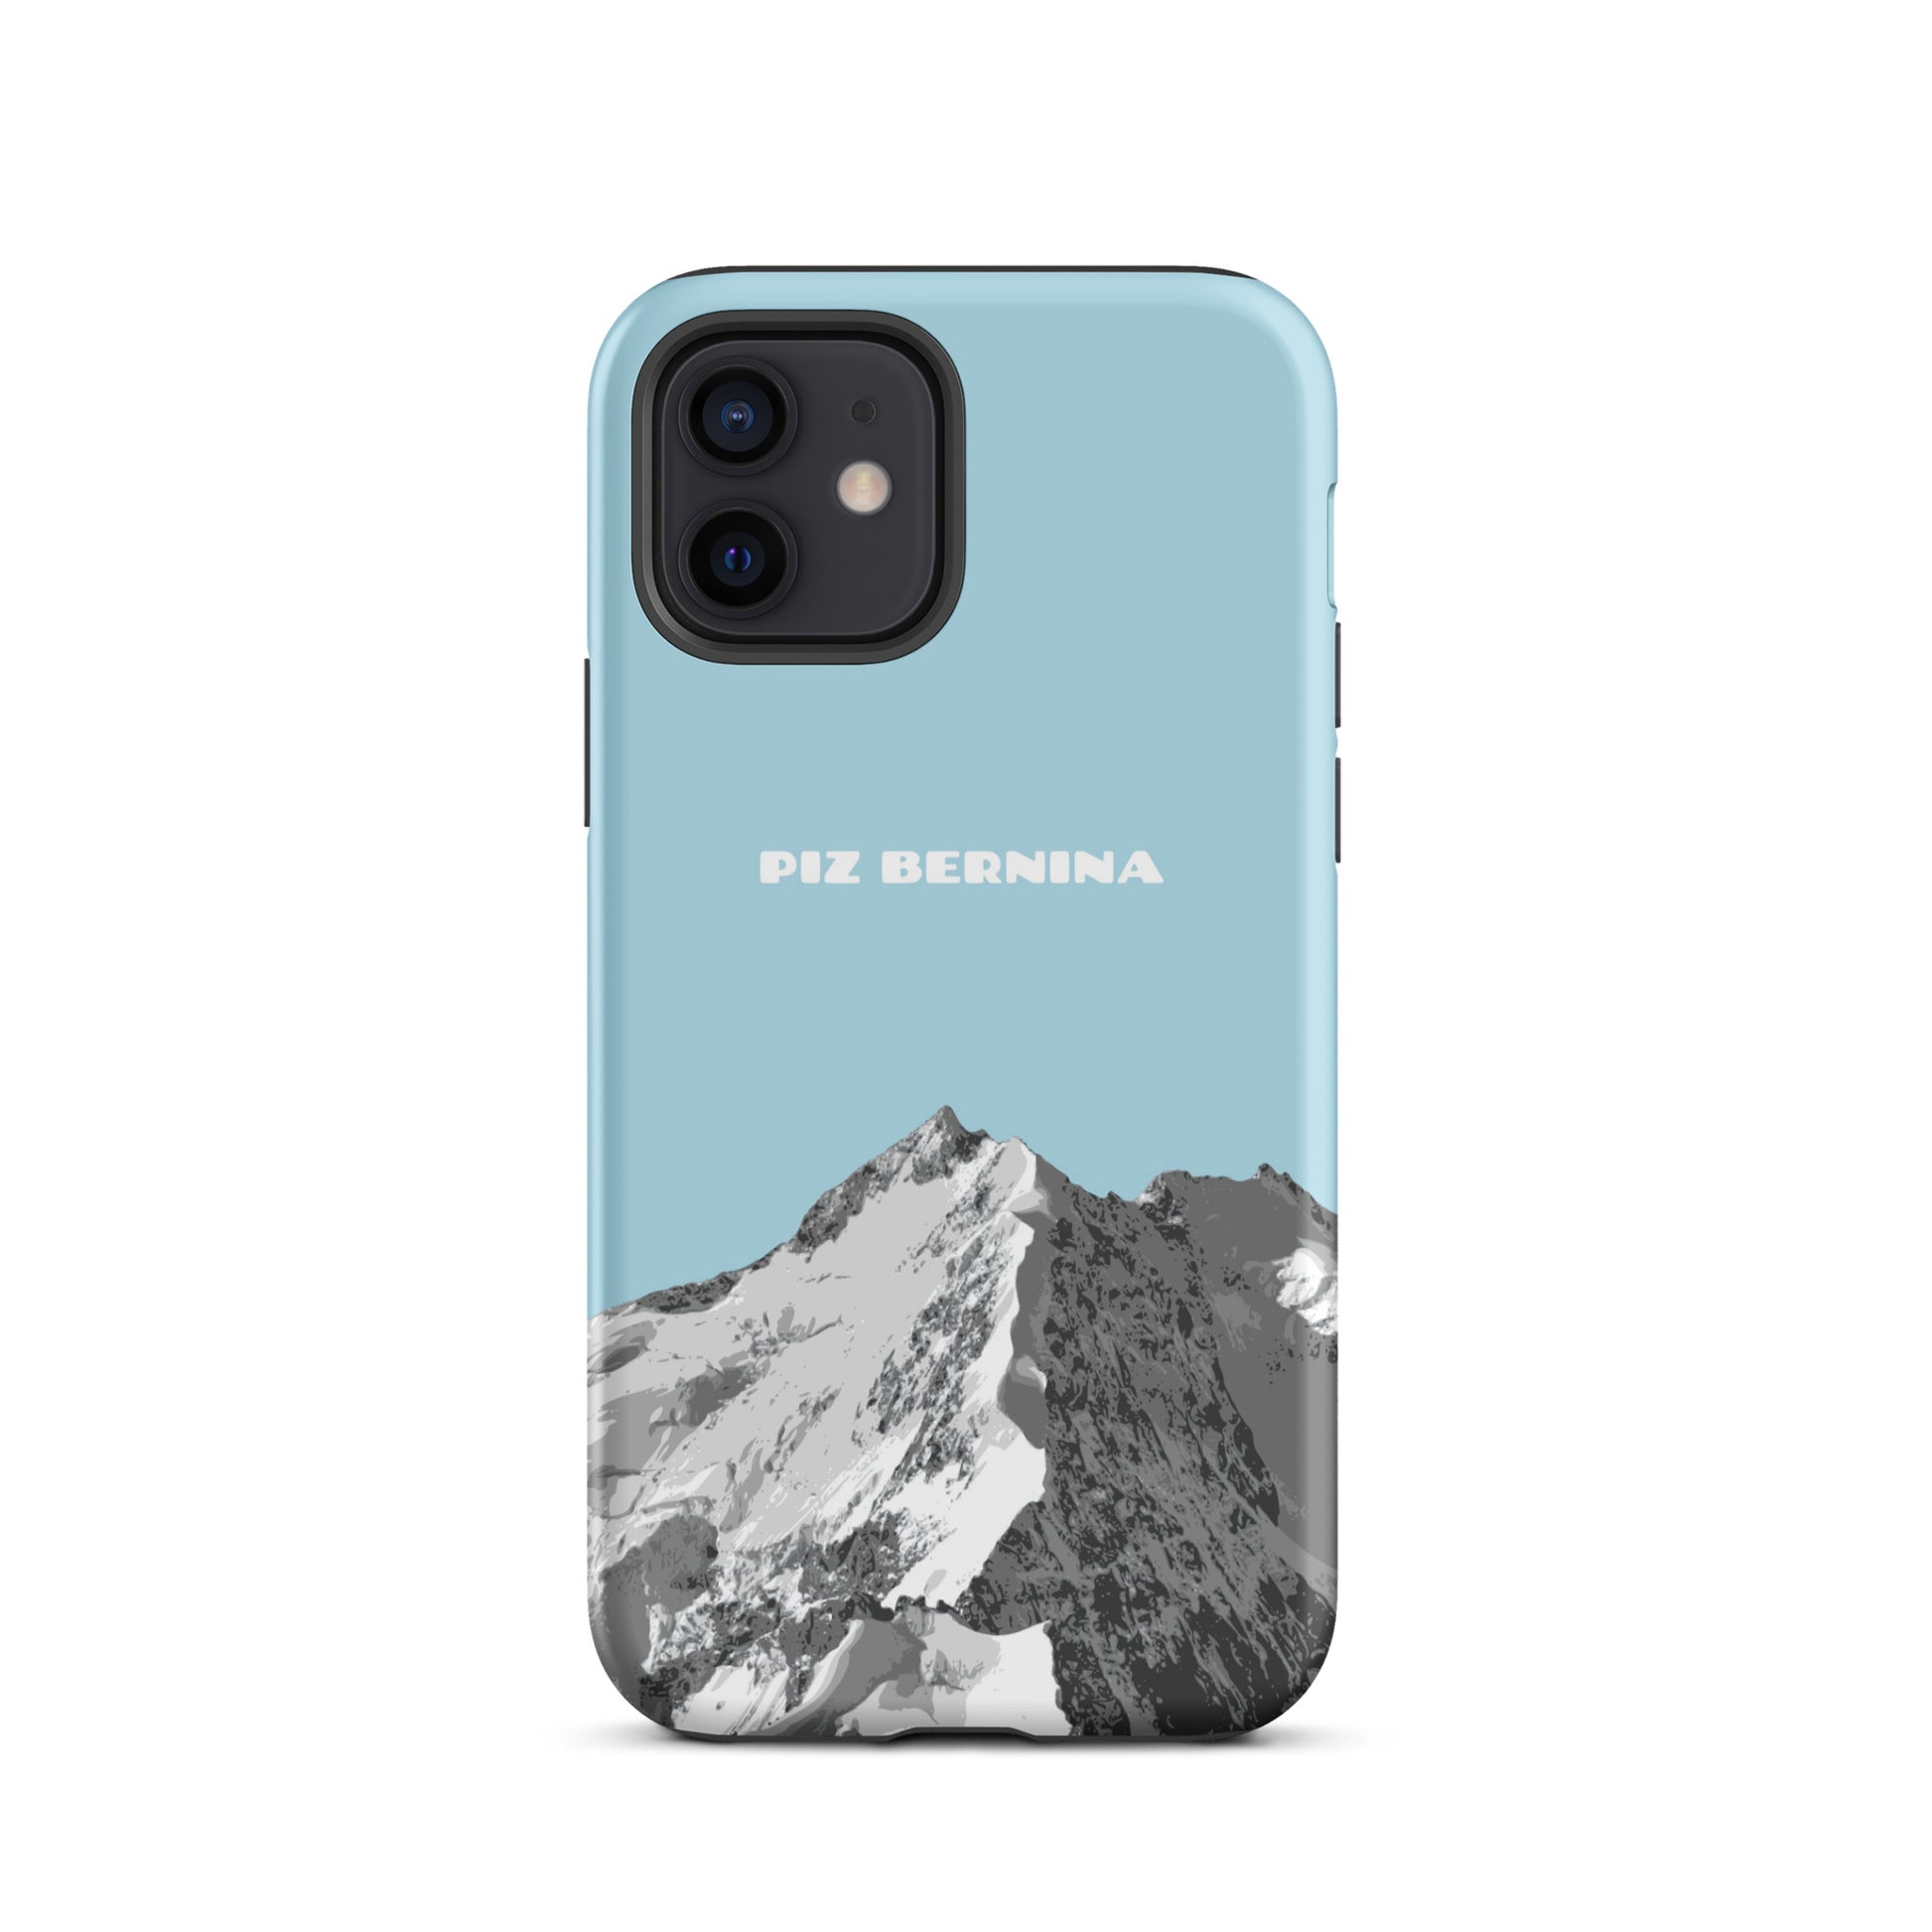 Hülle für das iPhone 12 von Apple in der Farbe Hellblau, dass den Piz Bernina in Graubünden zeigt.